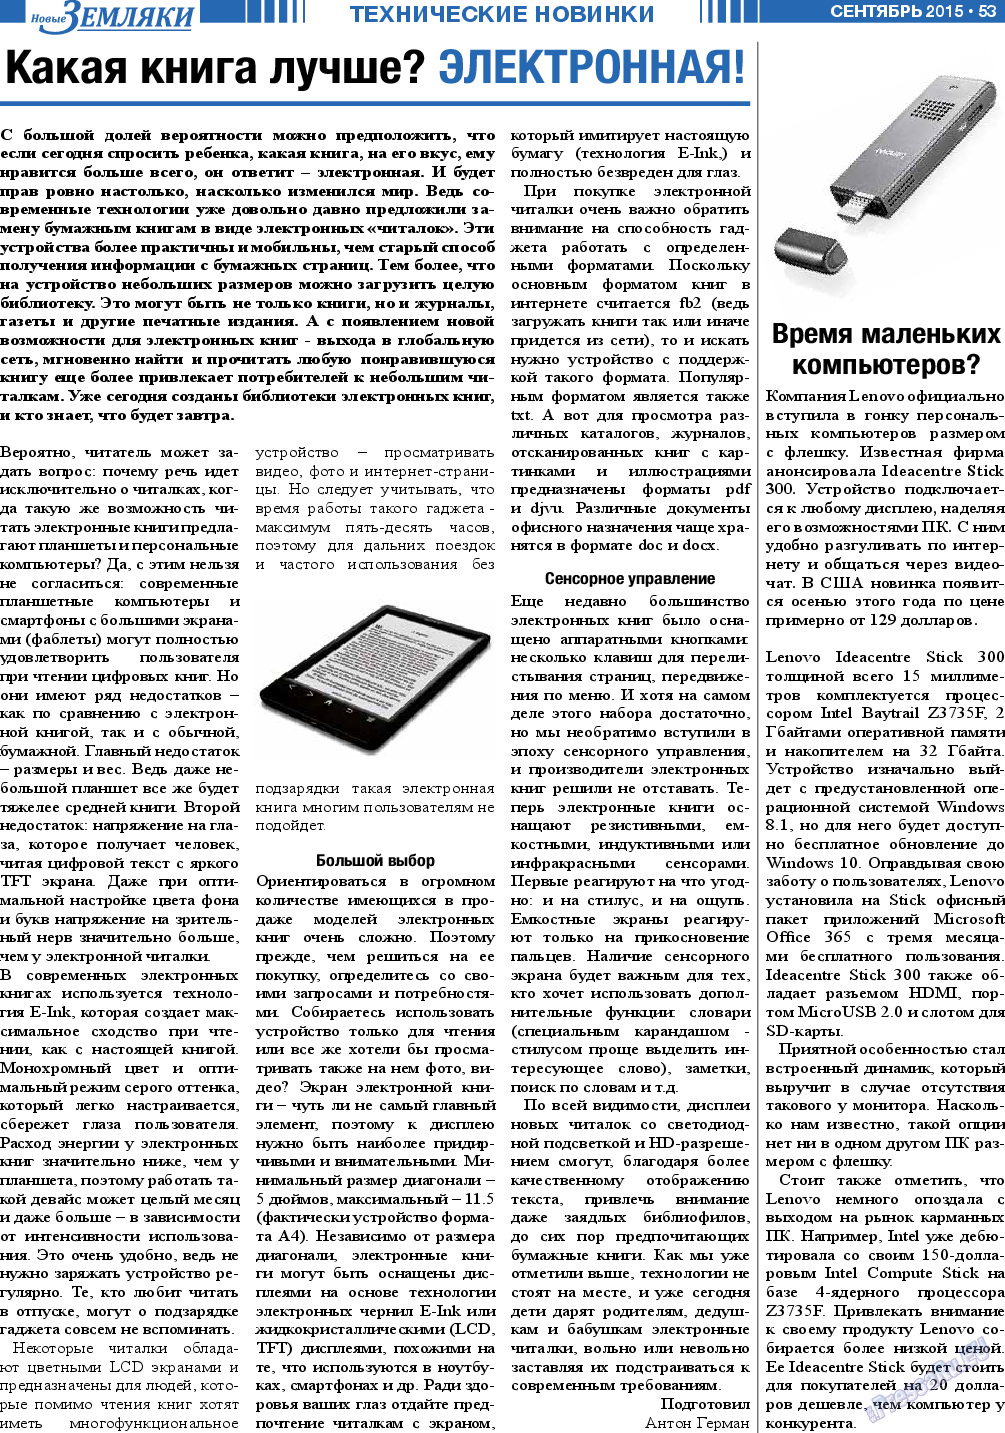 Новые Земляки, газета. 2015 №9 стр.53